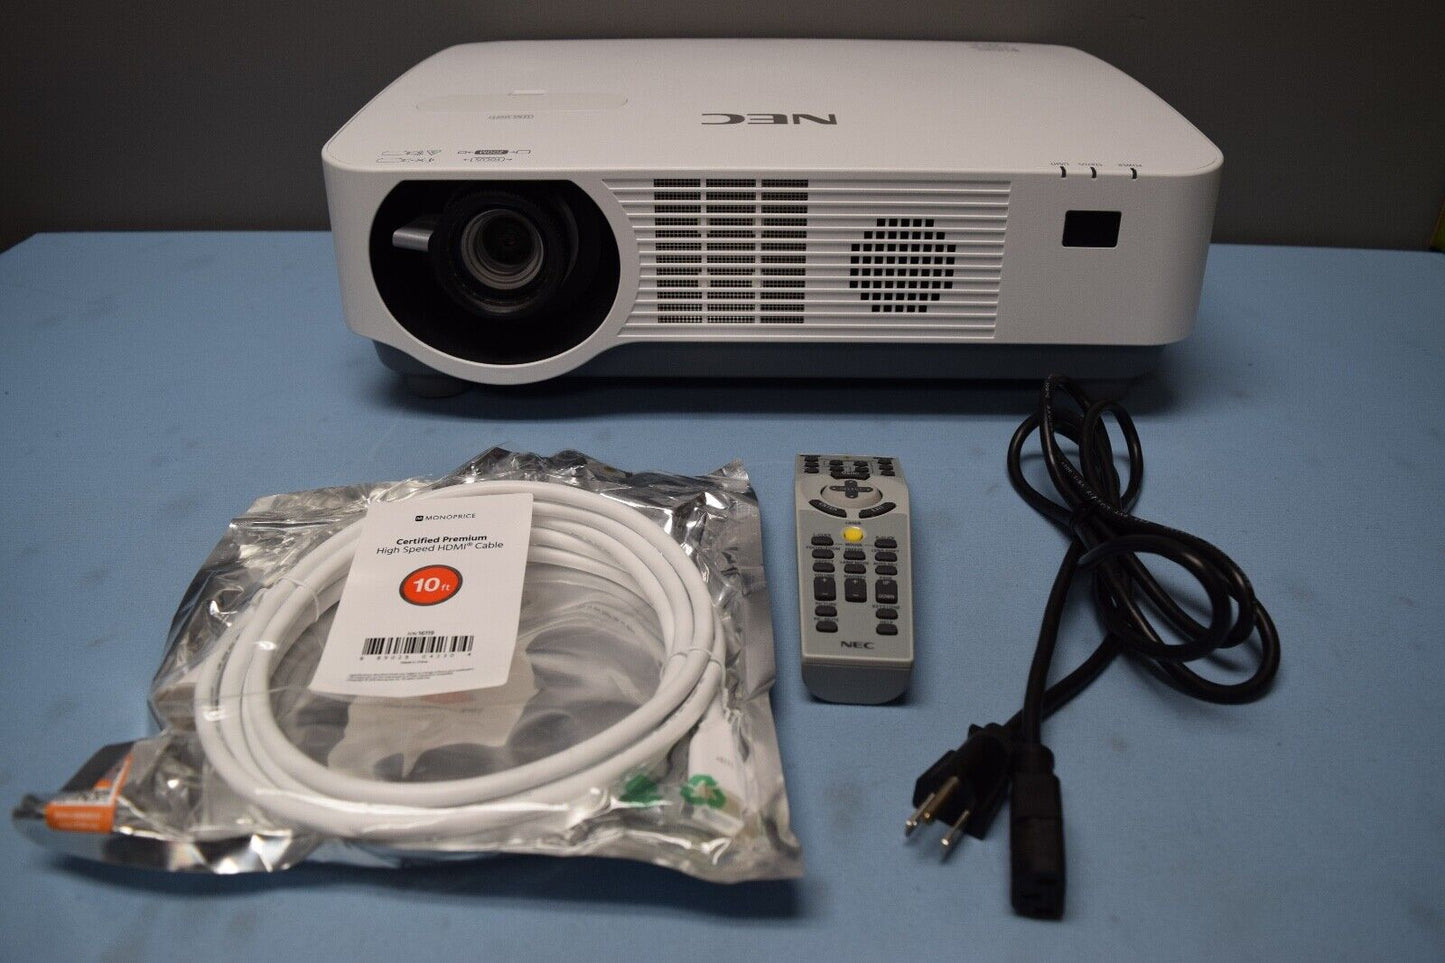 NEC P502HL-2 5000 ANSI Lumen DLP Laser Projector with Remote